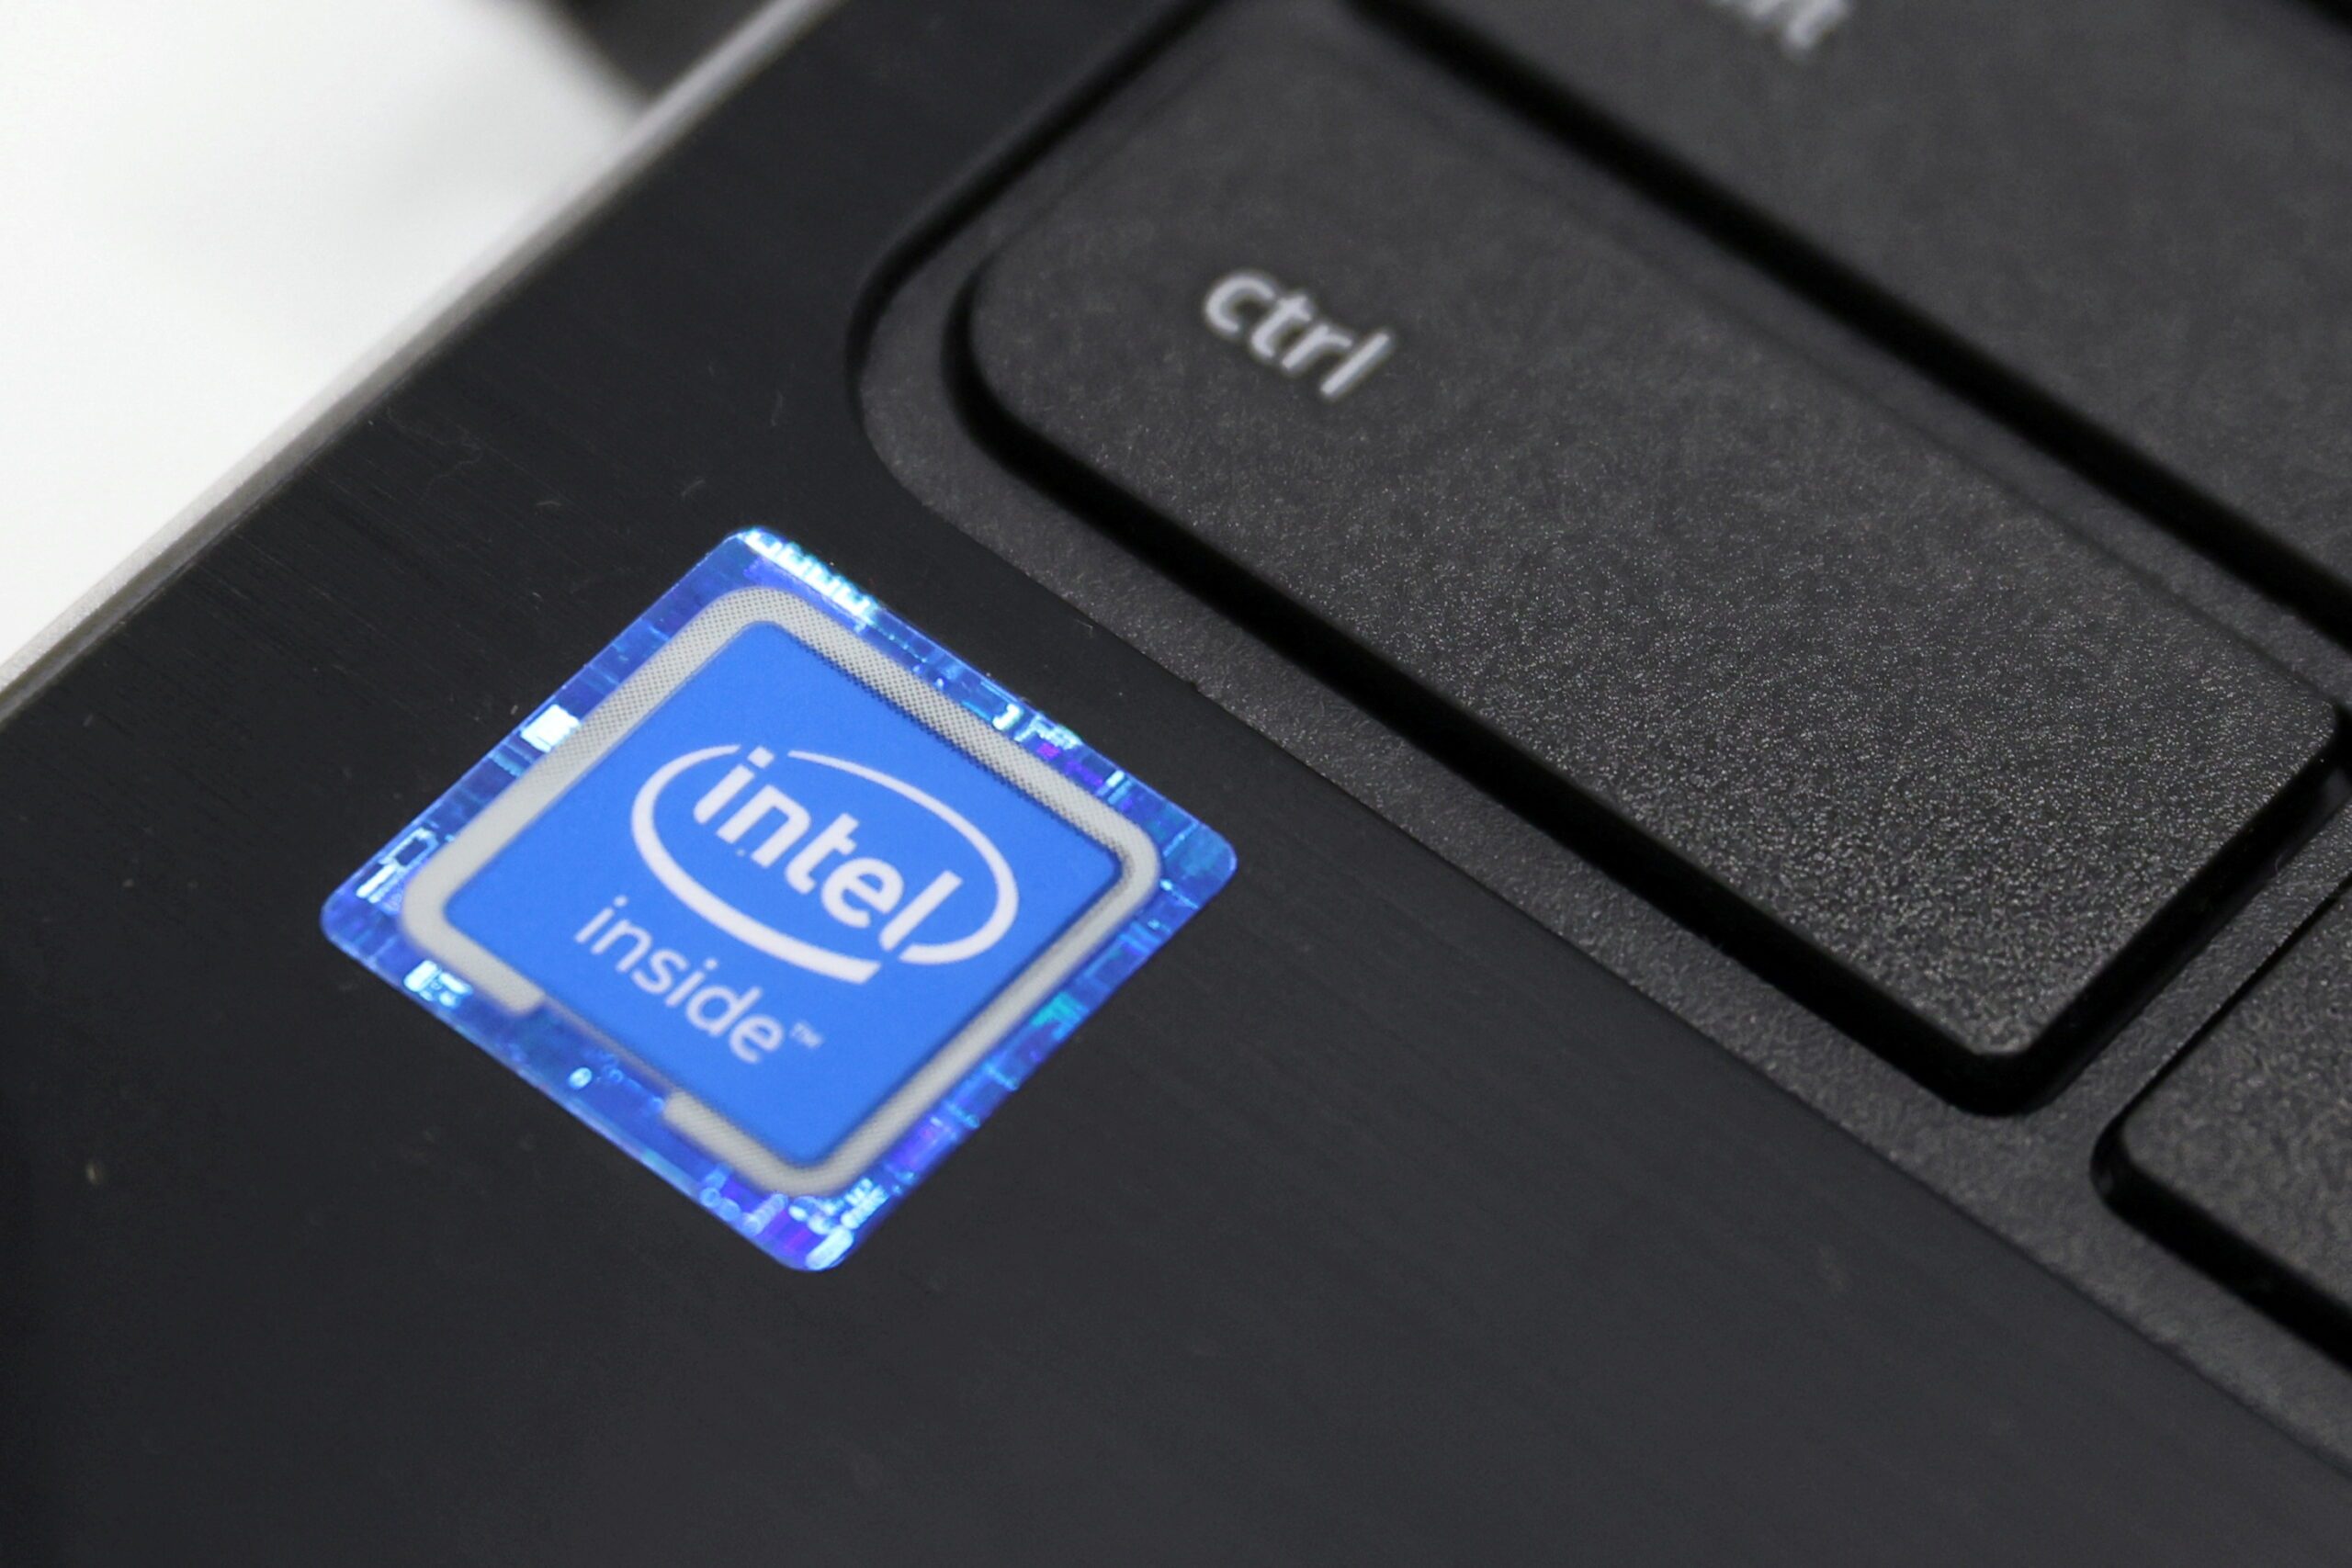 Intel slashes employee, executive pay amid PC market downturn